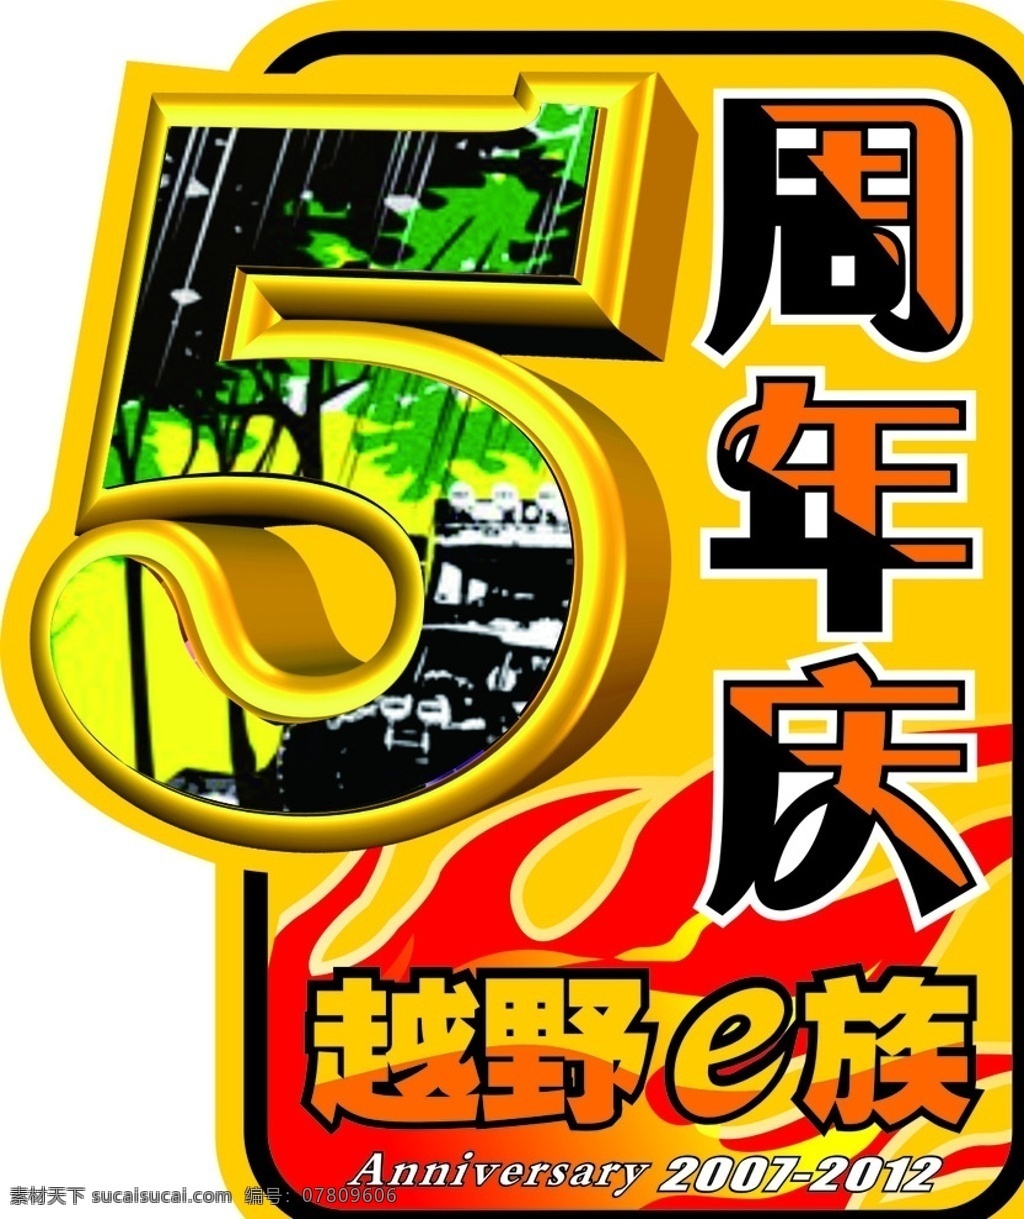 越野一族 logo 车友会 俱乐部 周年庆 5周年 车贴 标志图标 其他图标